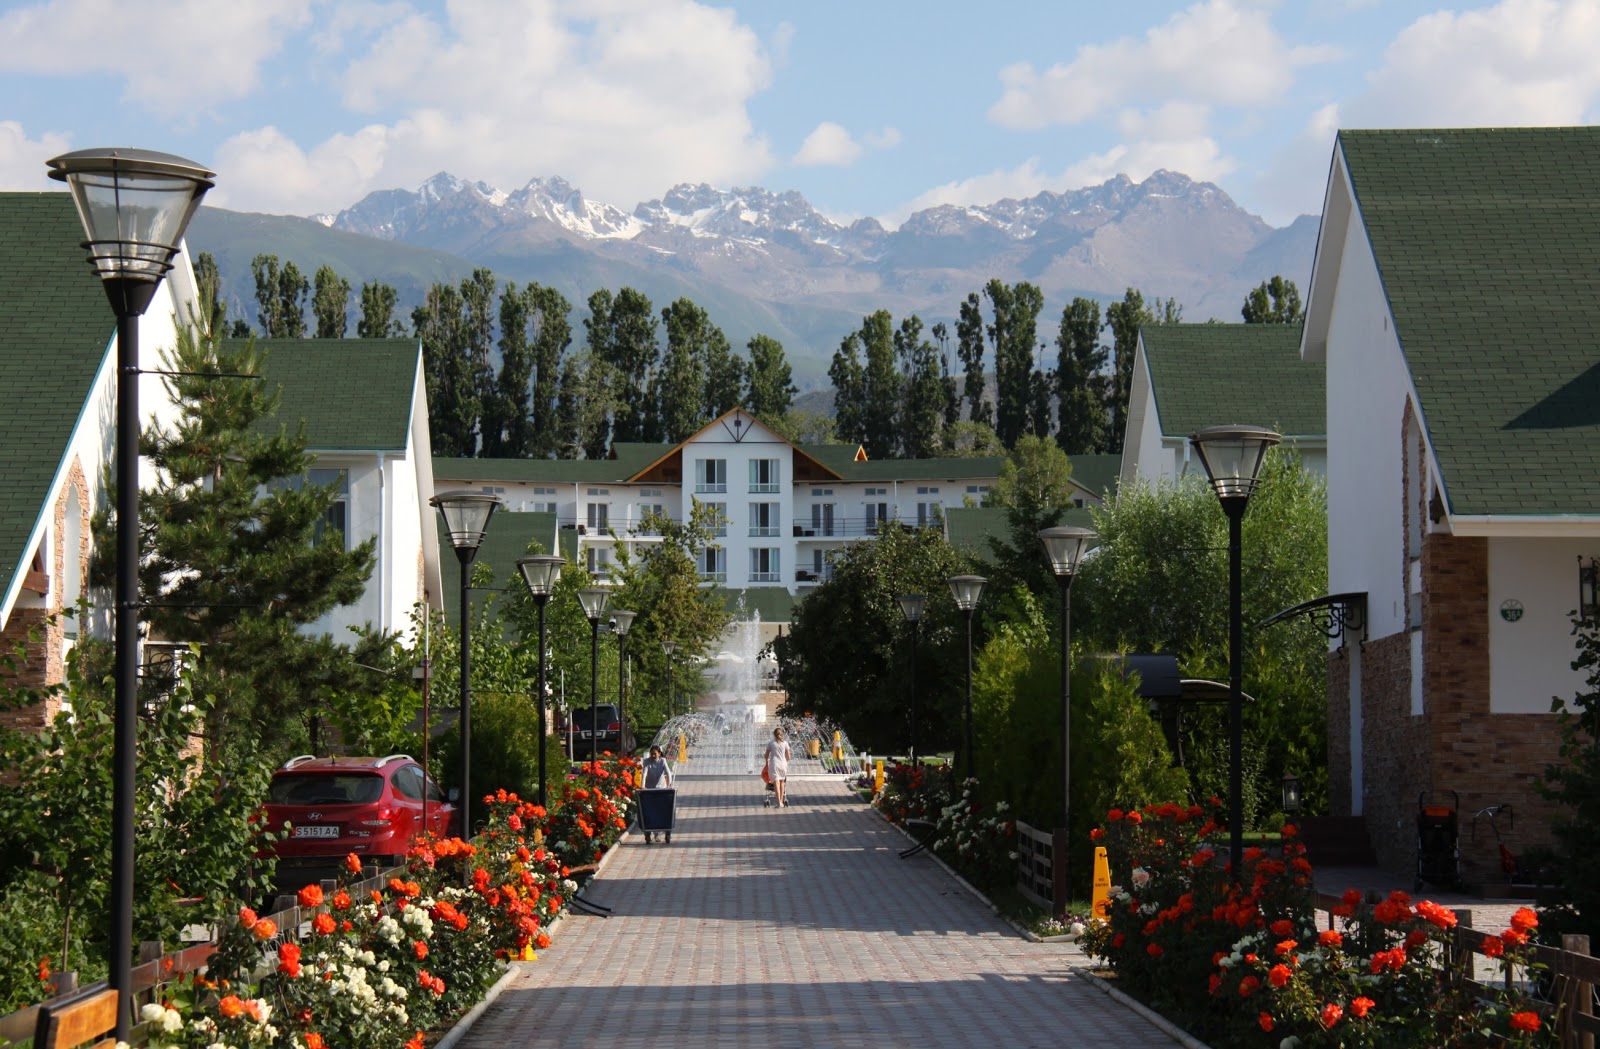 Отдых в киргизии